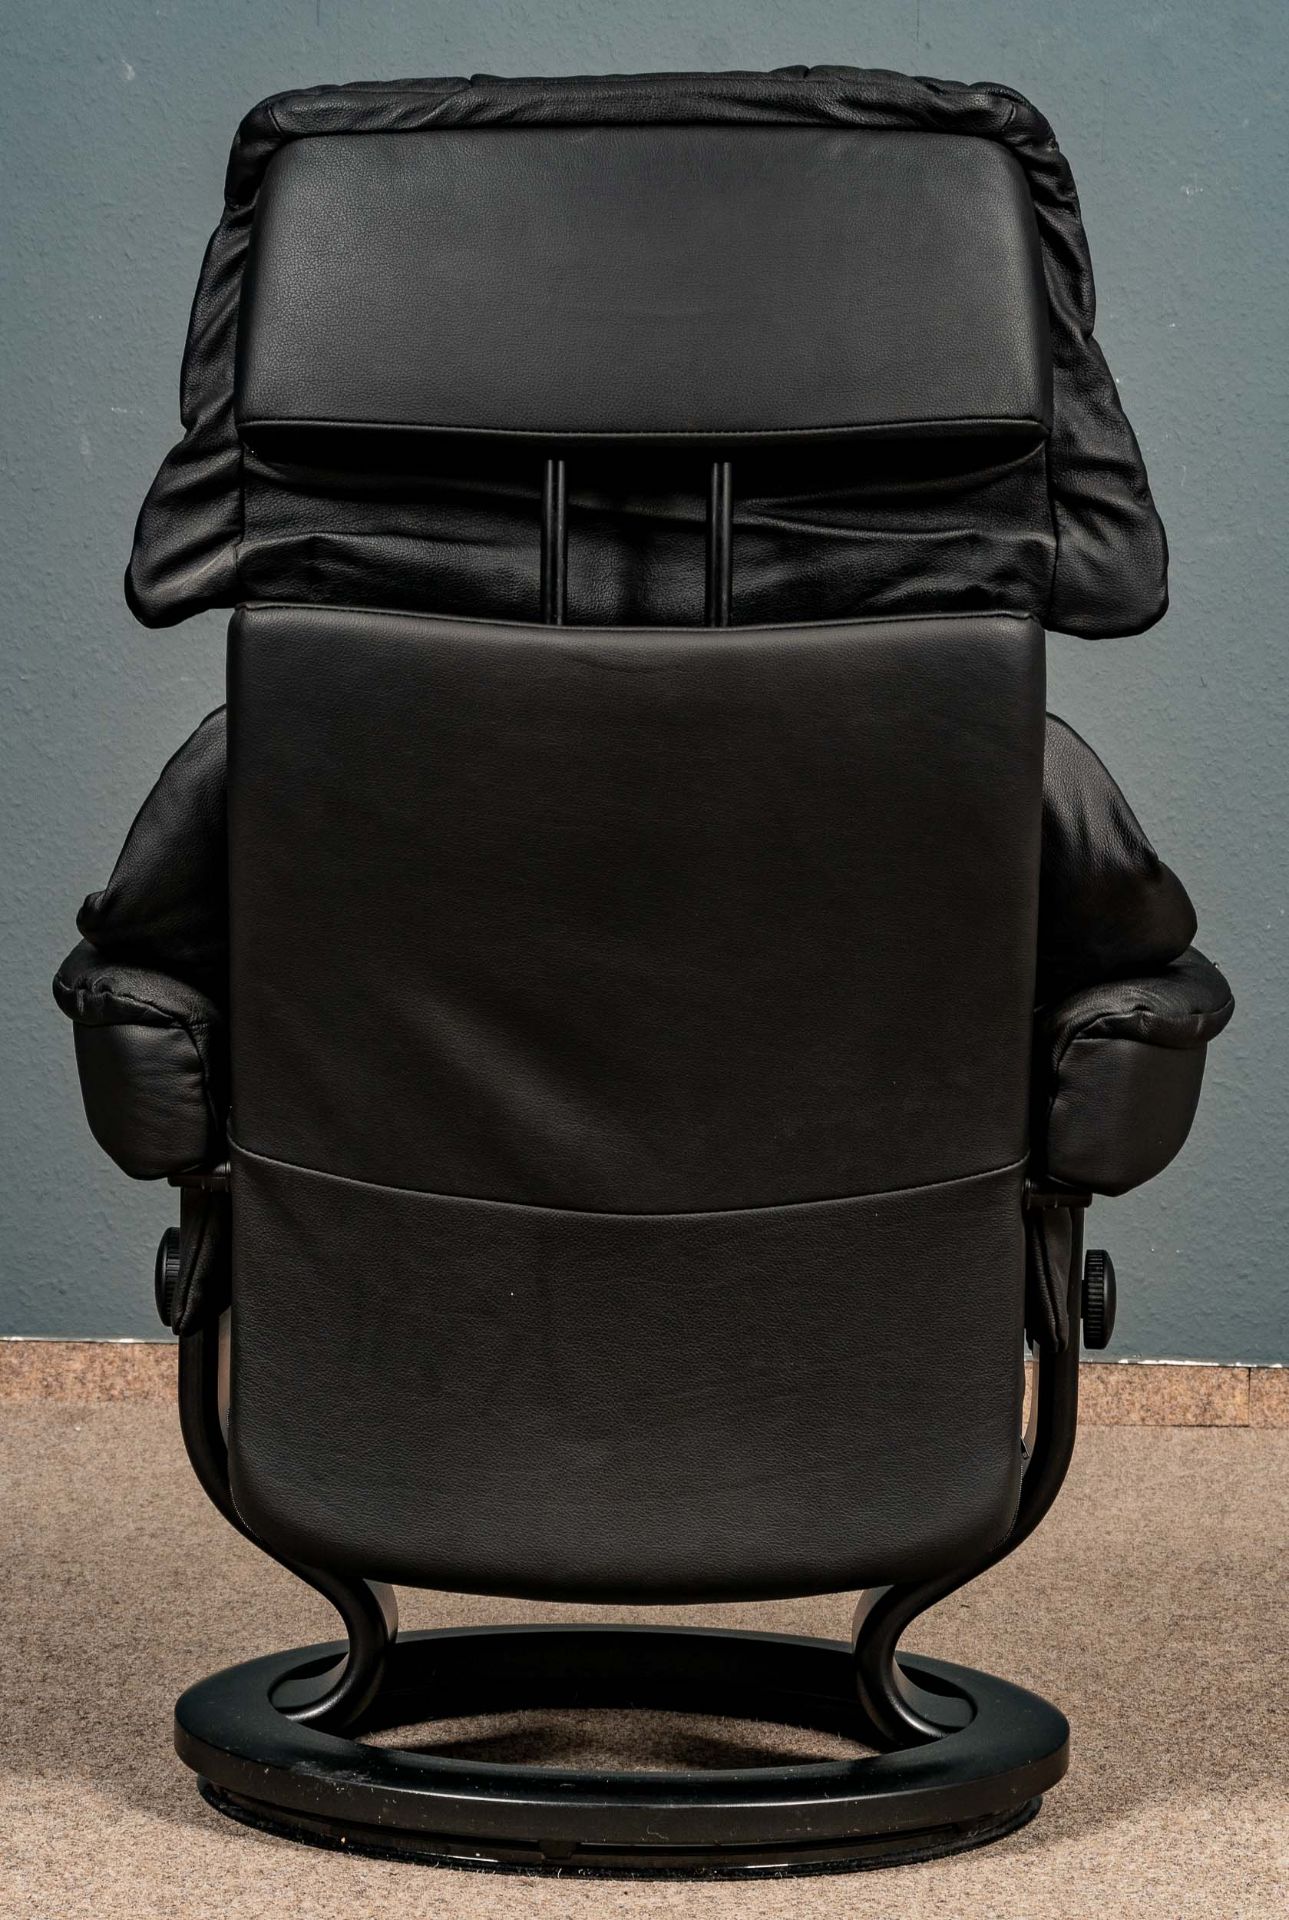 "STRESSLESS" - Sessel mit passendem Hocker, schöner gebrauchter Erhalt. Schwarzes Leder. - Bild 7 aus 8